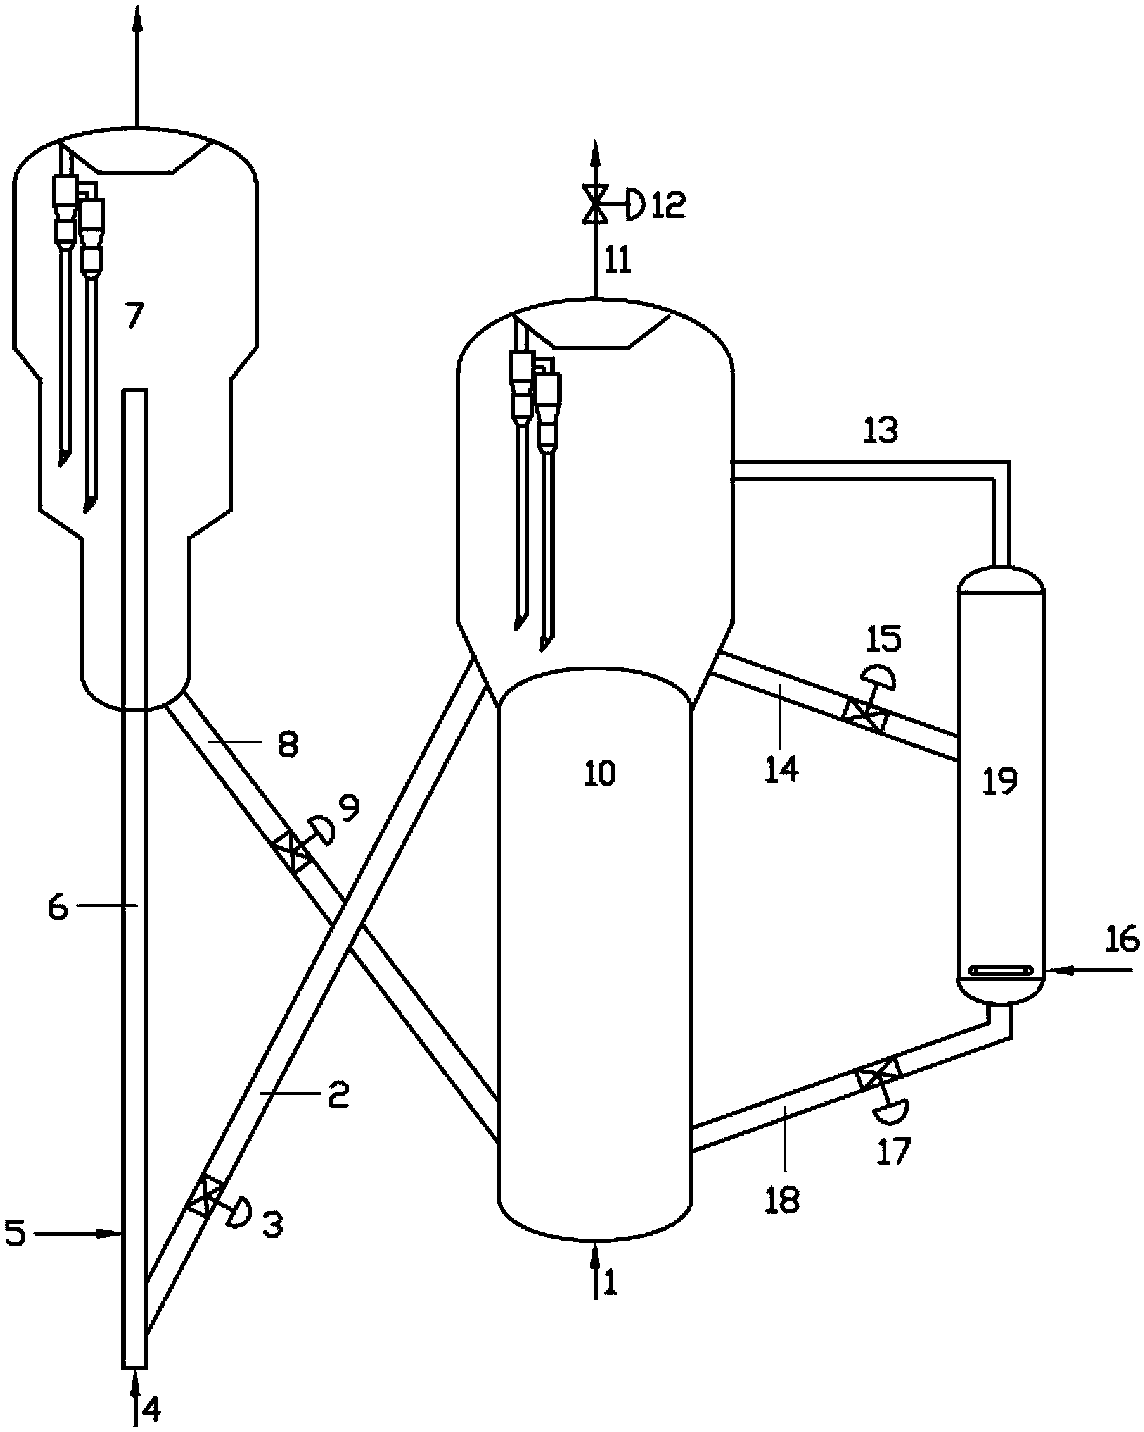 Work starting method for catalytic cracking unit